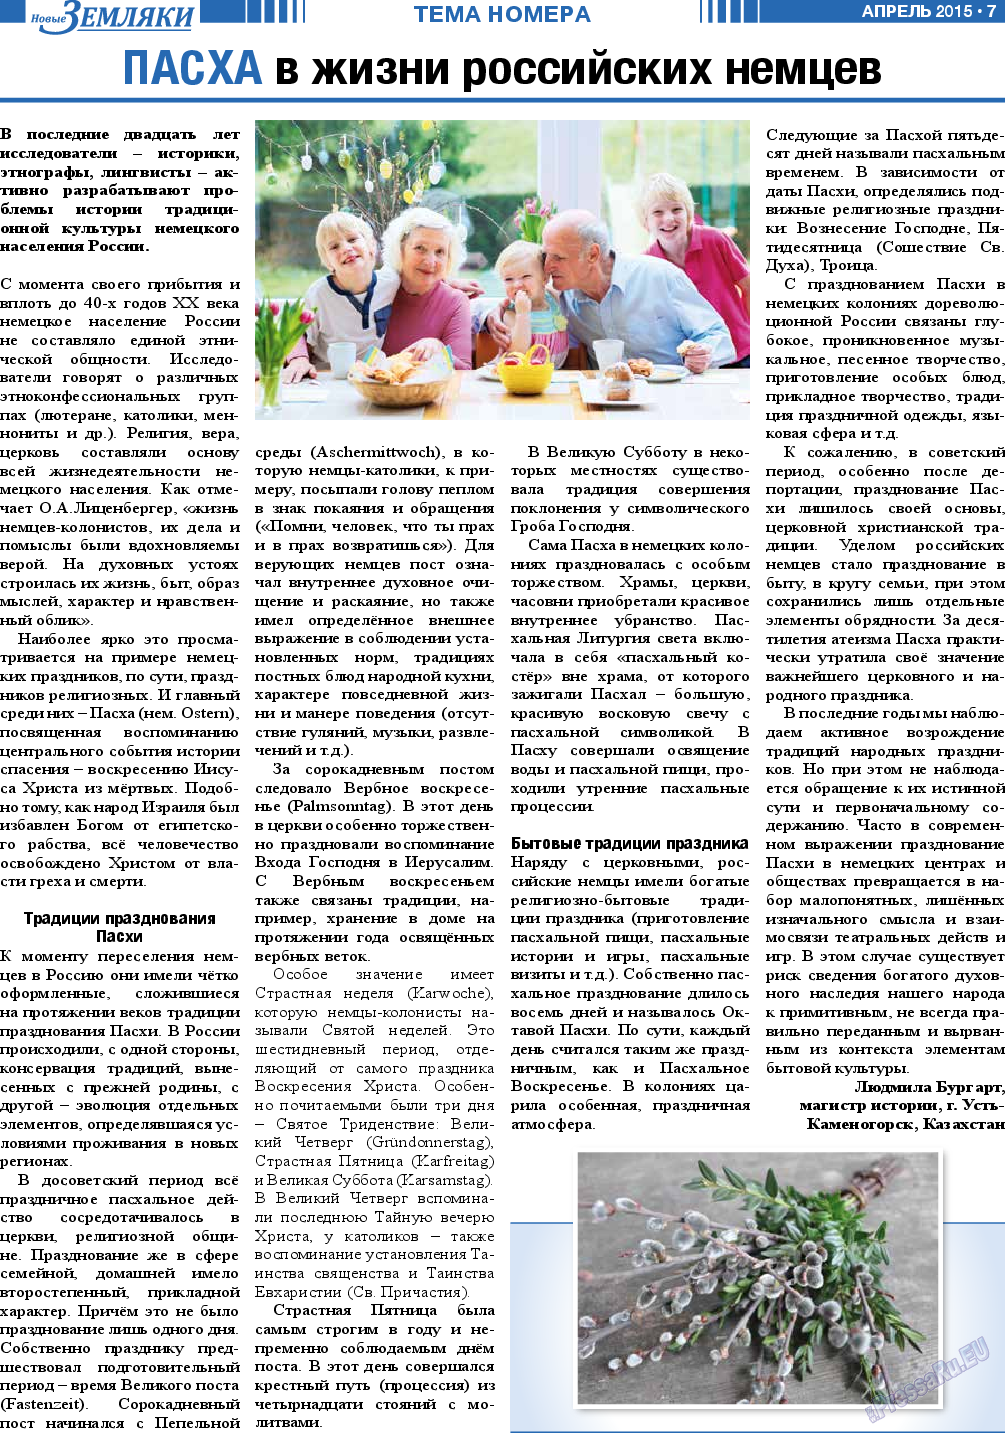 Новые Земляки, газета. 2015 №4 стр.7